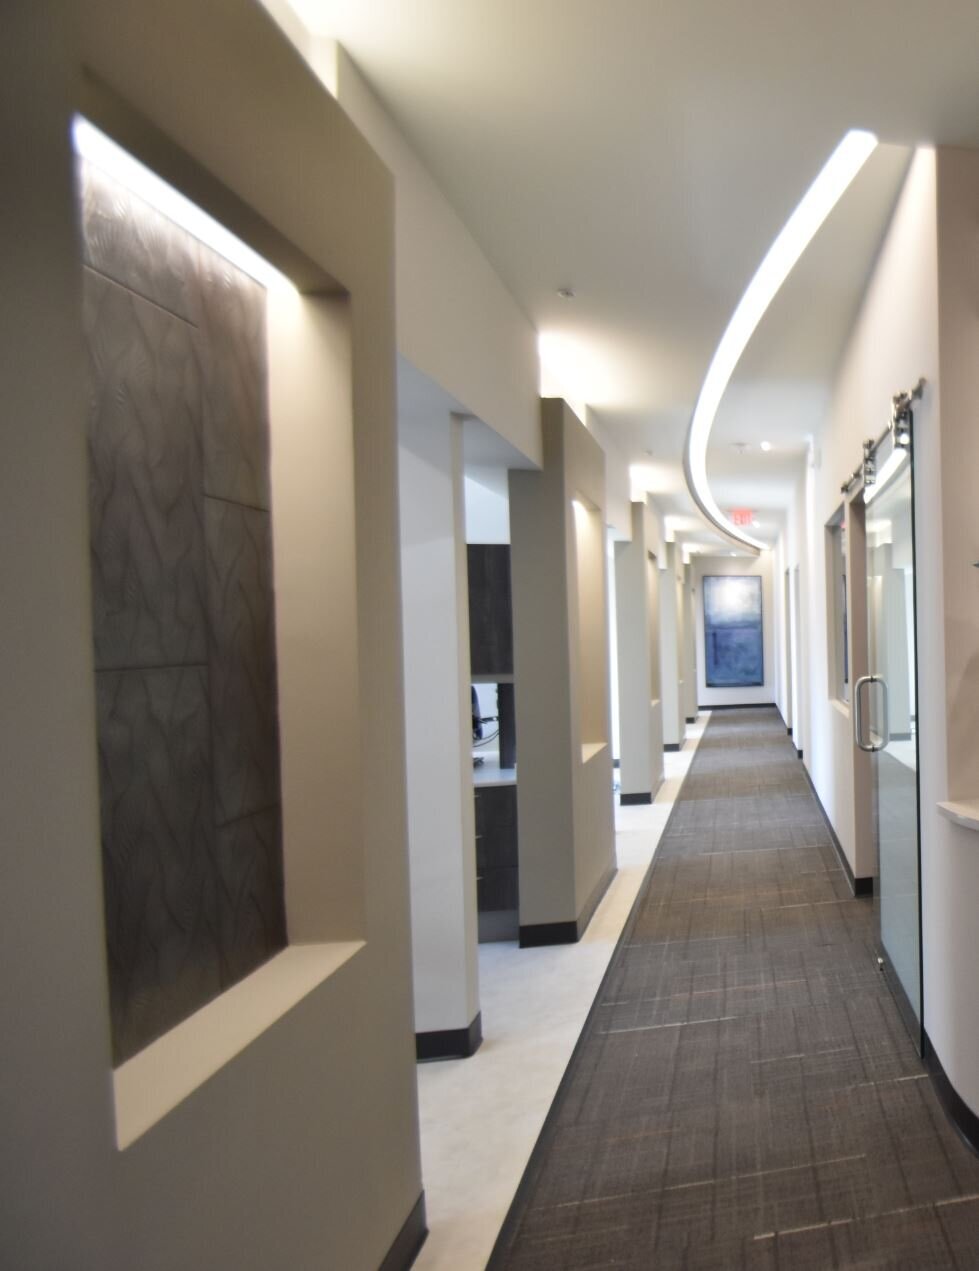 Modern Dental Office Design EnviroMed Florida Corridor Lighting